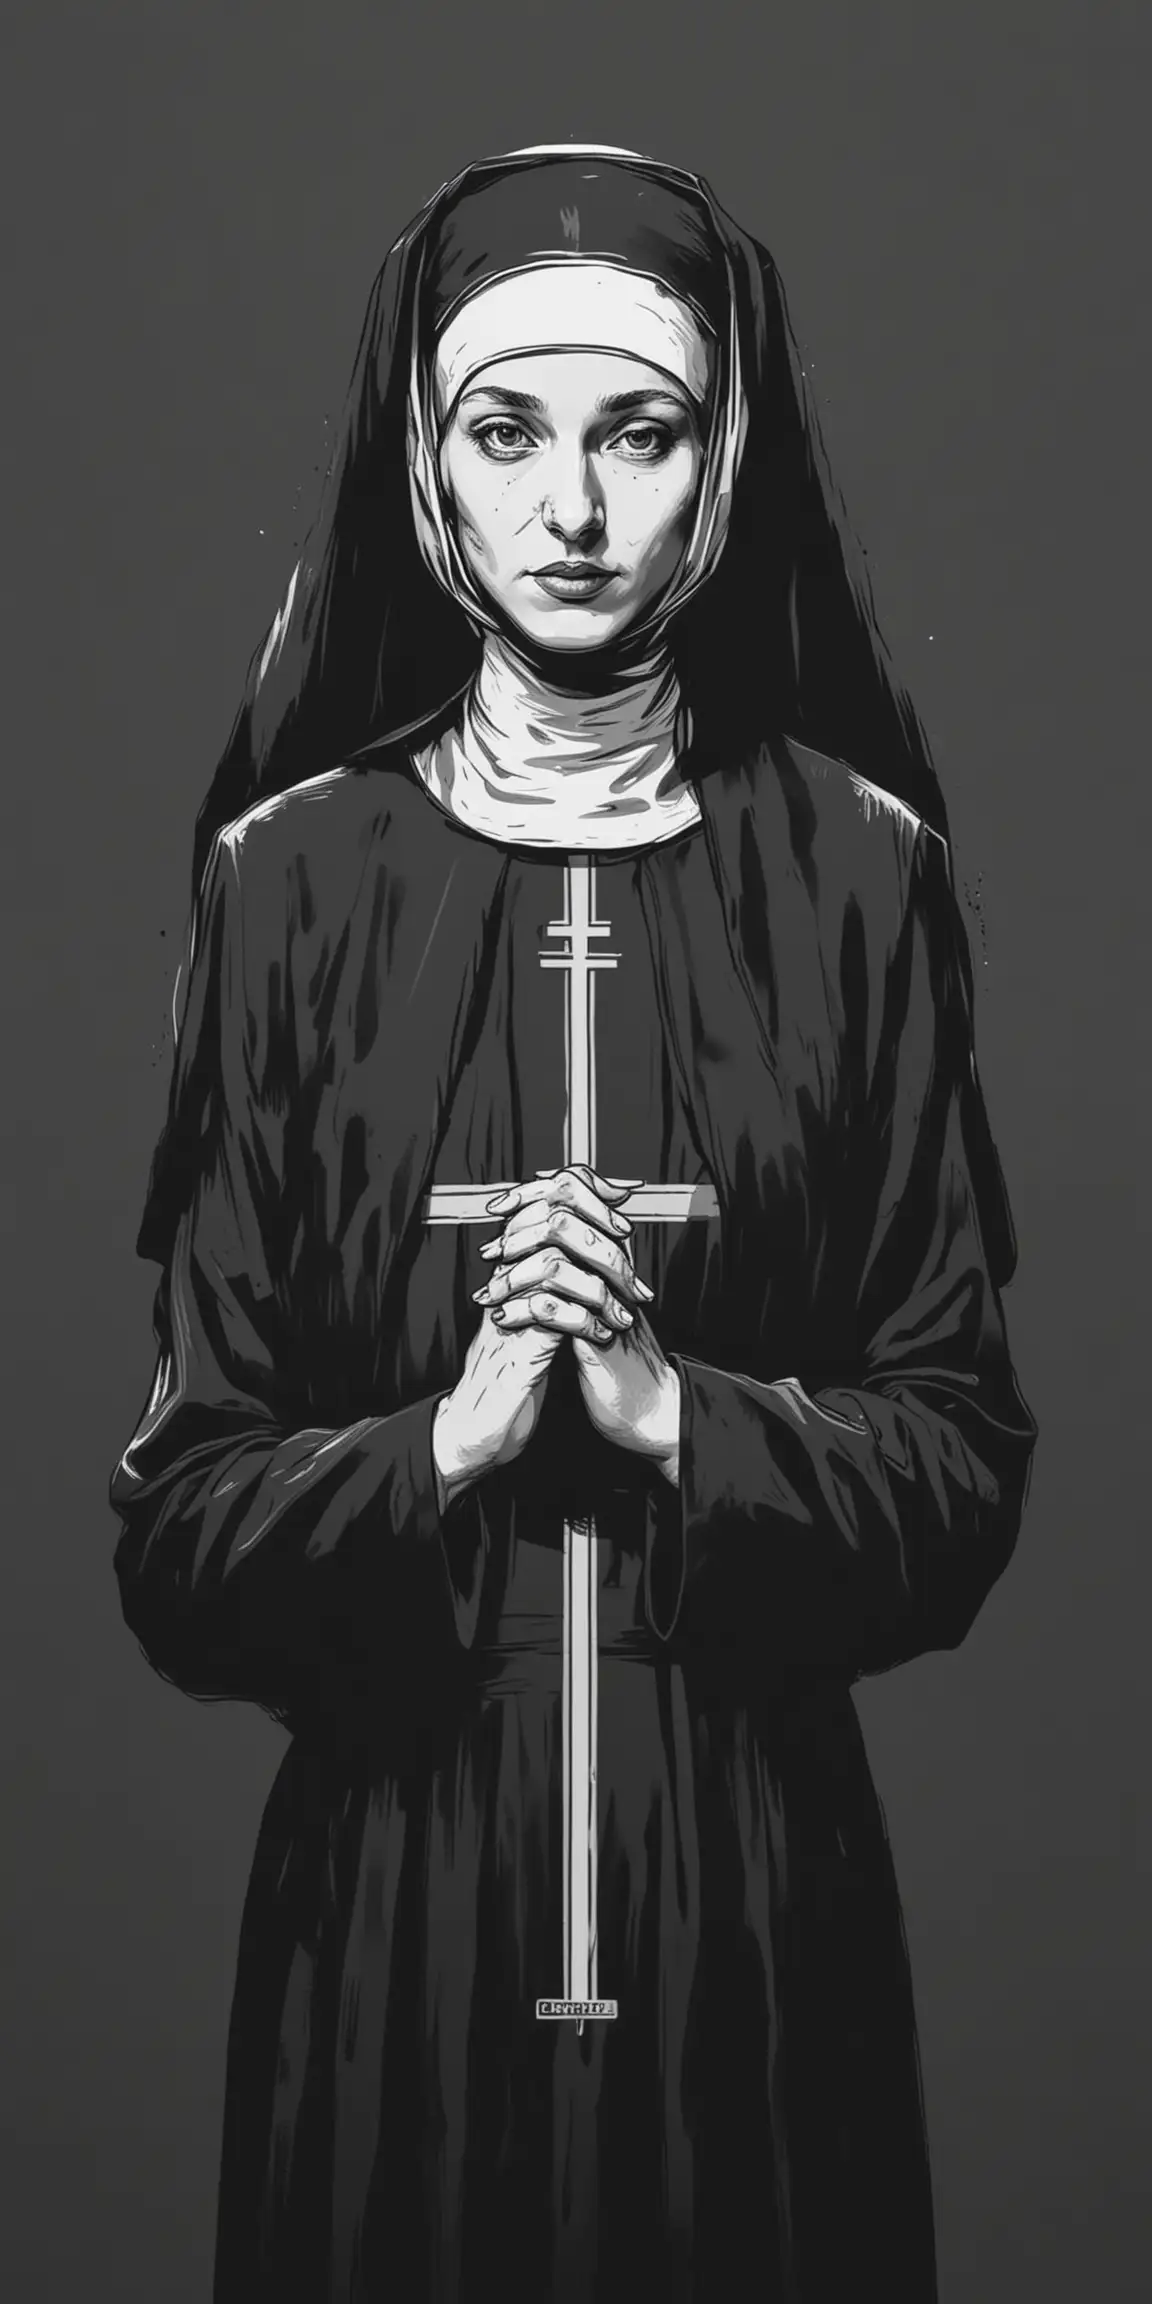 Nun in Serene Black and White Vector Art